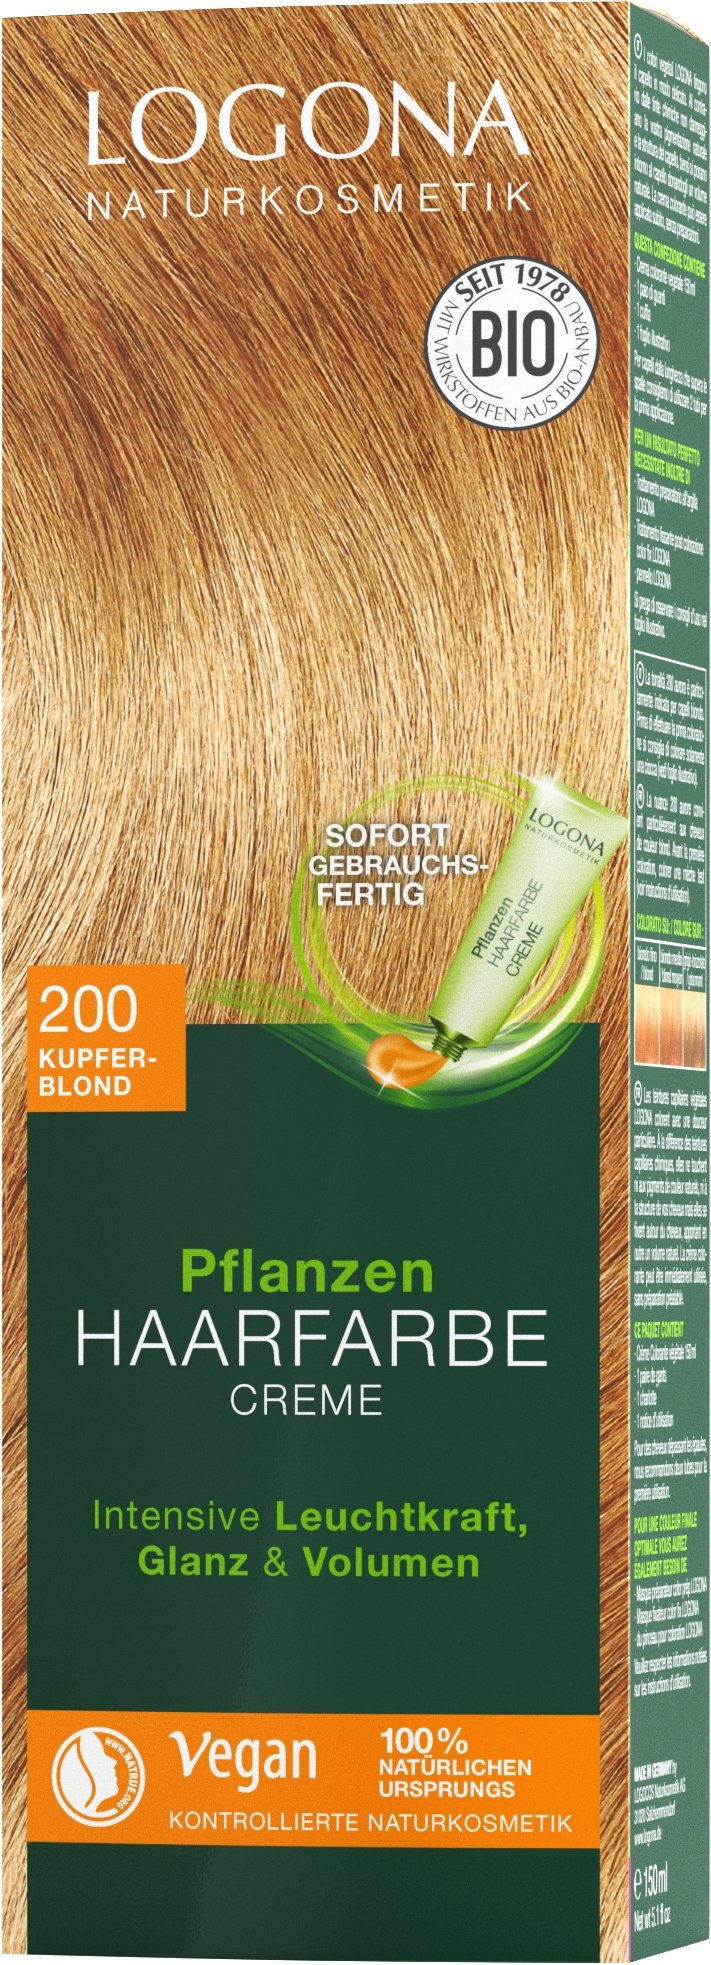 Pflanzen-Haarfarbe Creme 200 Kupferblond Logona | Haarfarben 